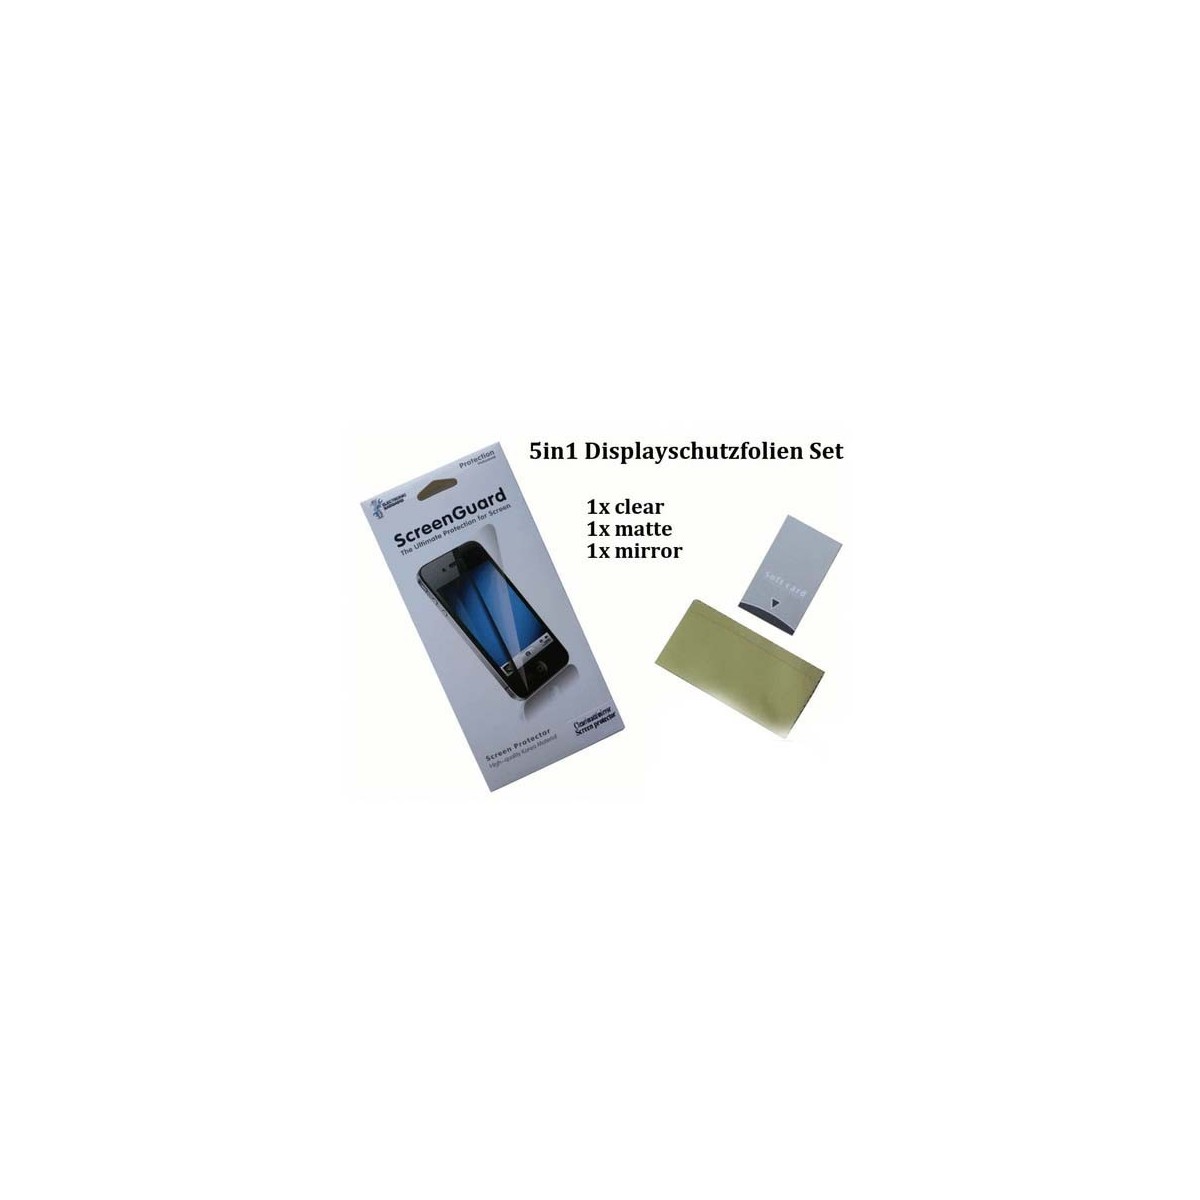 Display Schutz Folie Schutzfolie Protector 5in1 Set für Apple iPhone 4G / 4S